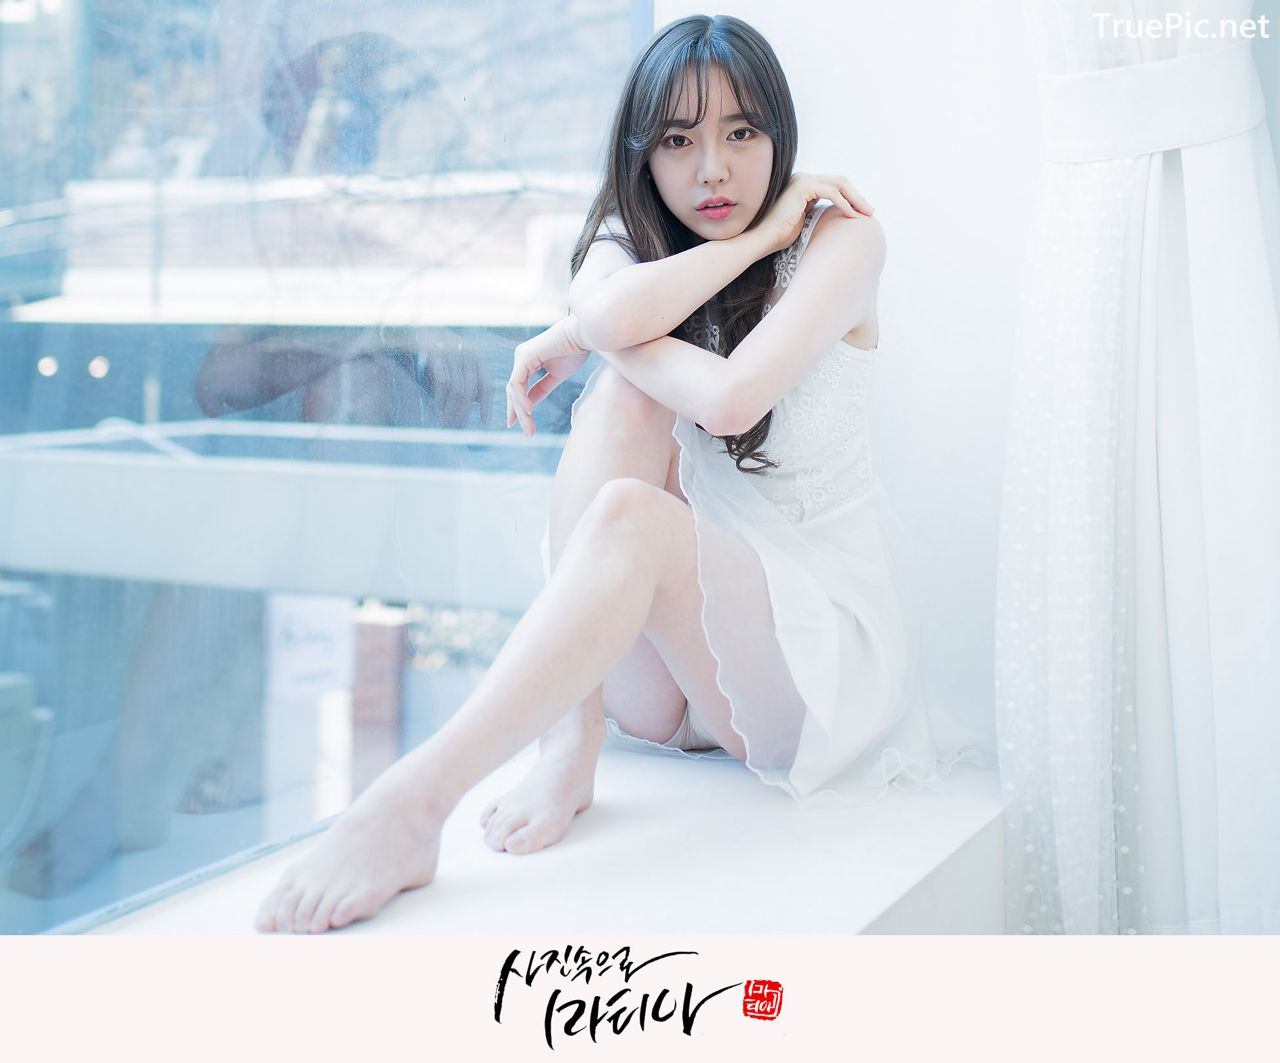 Image-Korean-Hot-Model-Go-Eun-Yang-Indoor-Photoshoot-Collection-TruePic.net- Picture-56